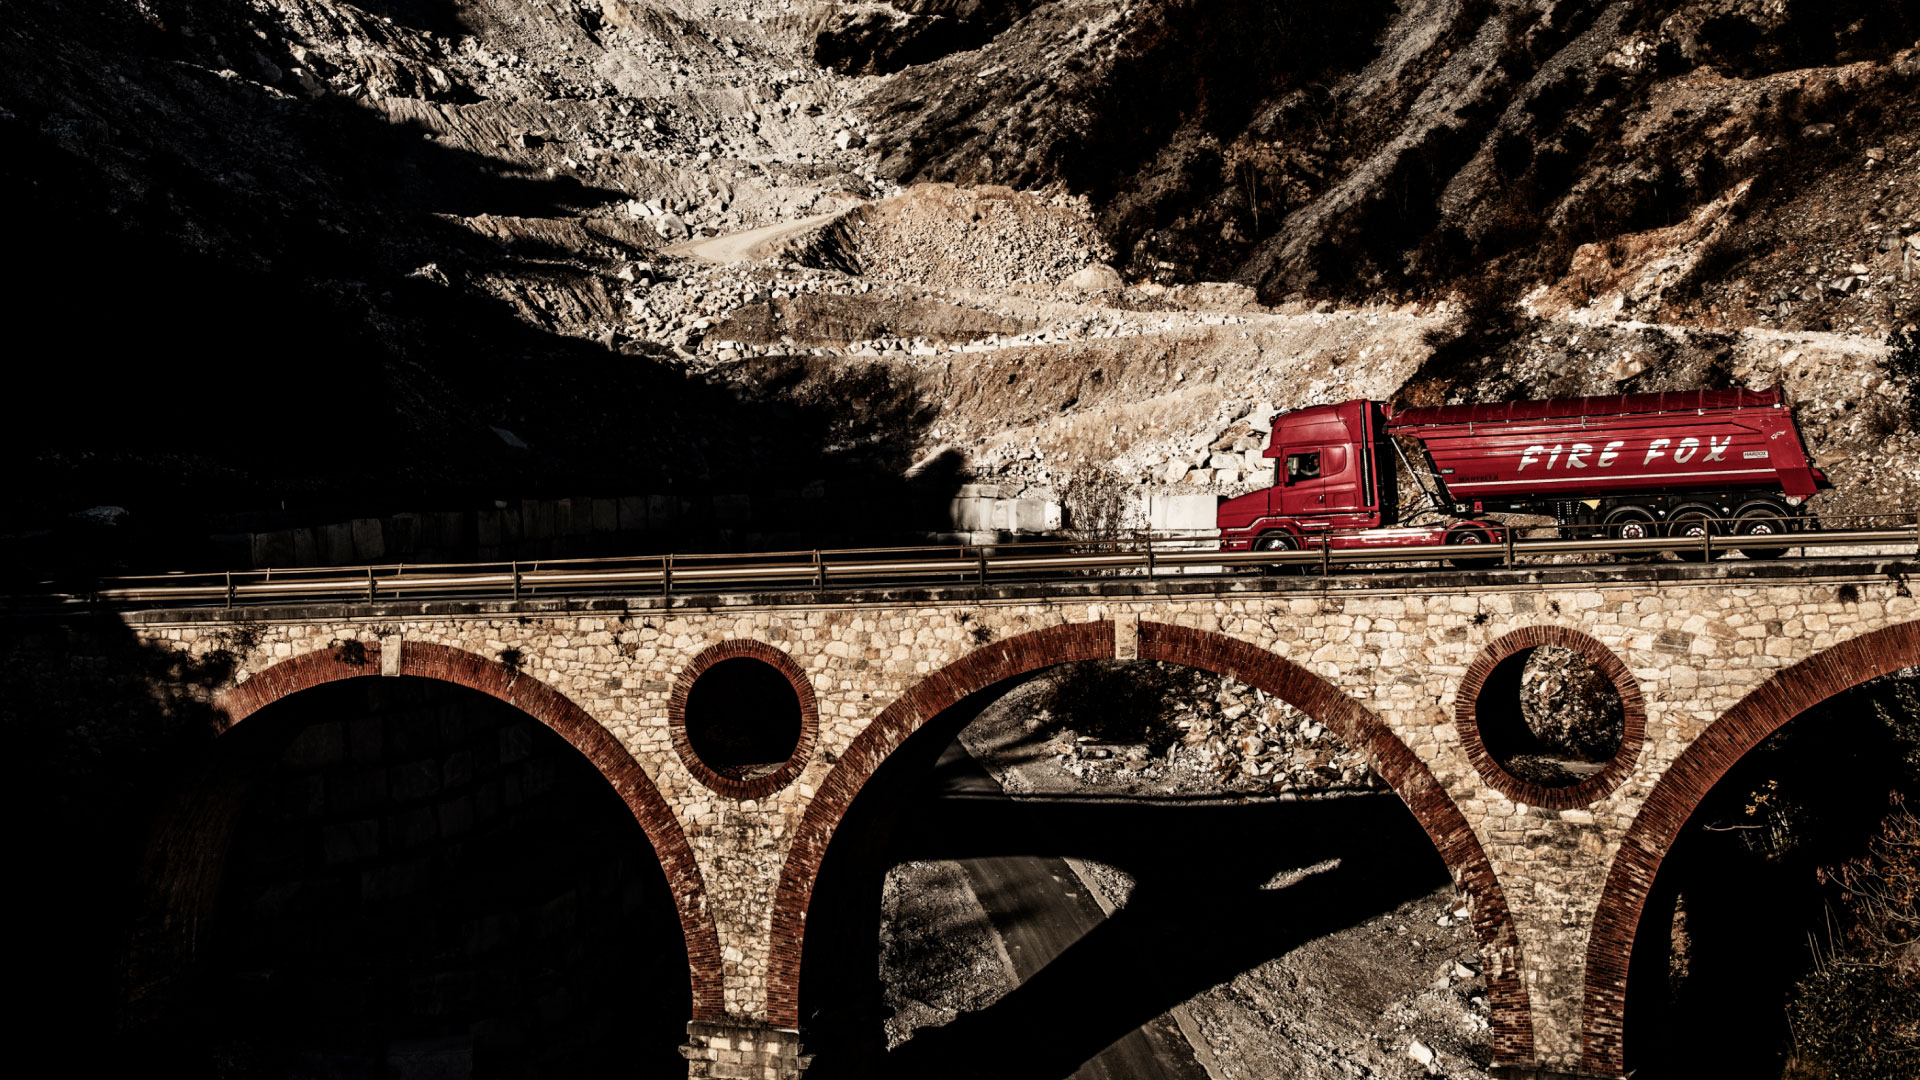 Chiếc xe tải màu đỏ, với thùng xe được thiết kế kiểu trọng lượng nhẹ bằng thép Hardox®, đang chạy qua cây cầu đá.